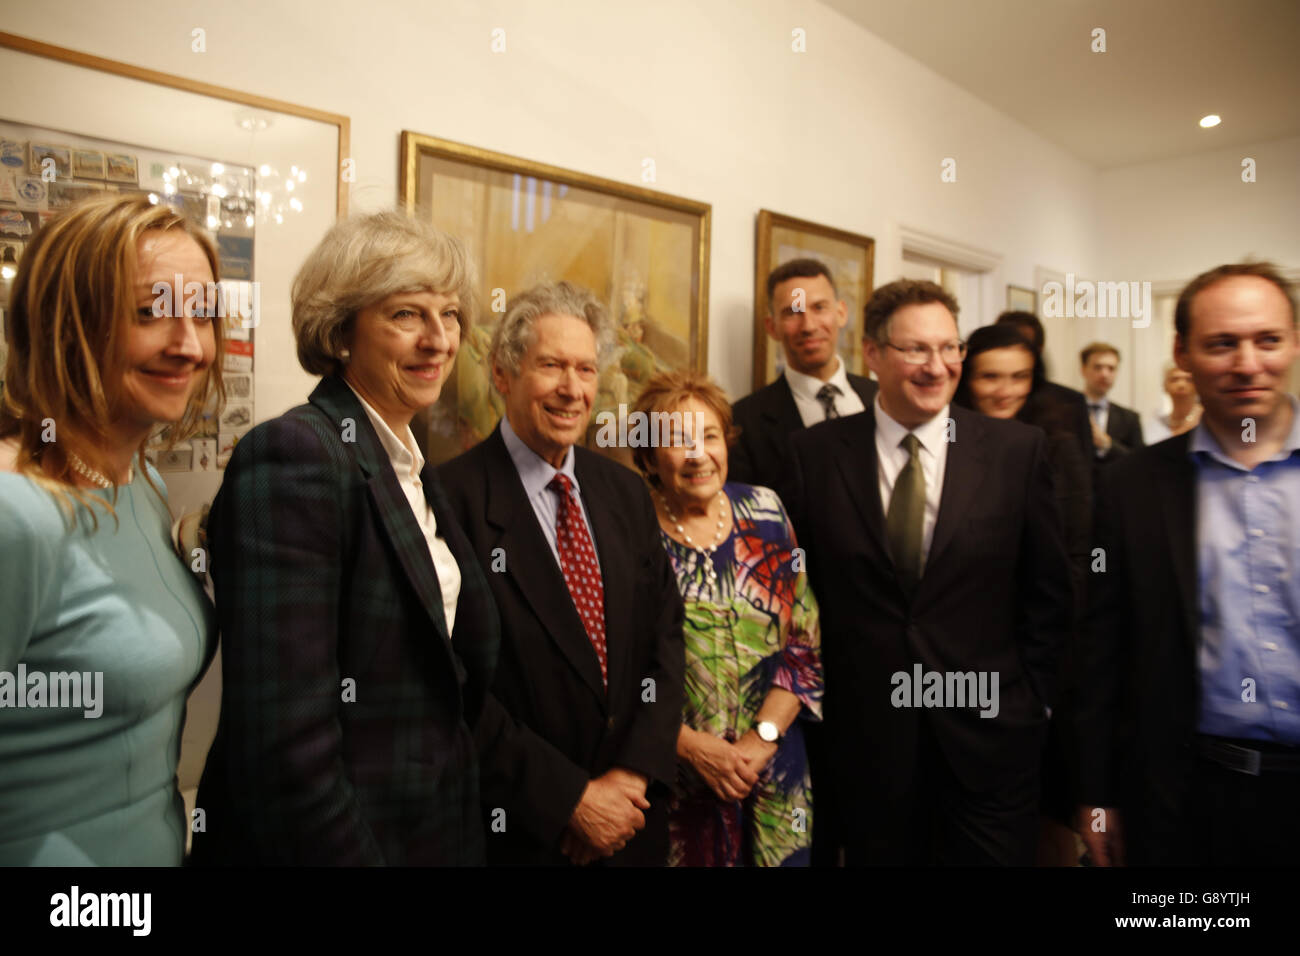 Londres, Reino Unido, 30 de junio de 2016. Teresa Mayo y Hampstead Kilburn asociación conservadora Crédito: Fantástico conejo/Alamy Live News Foto de stock